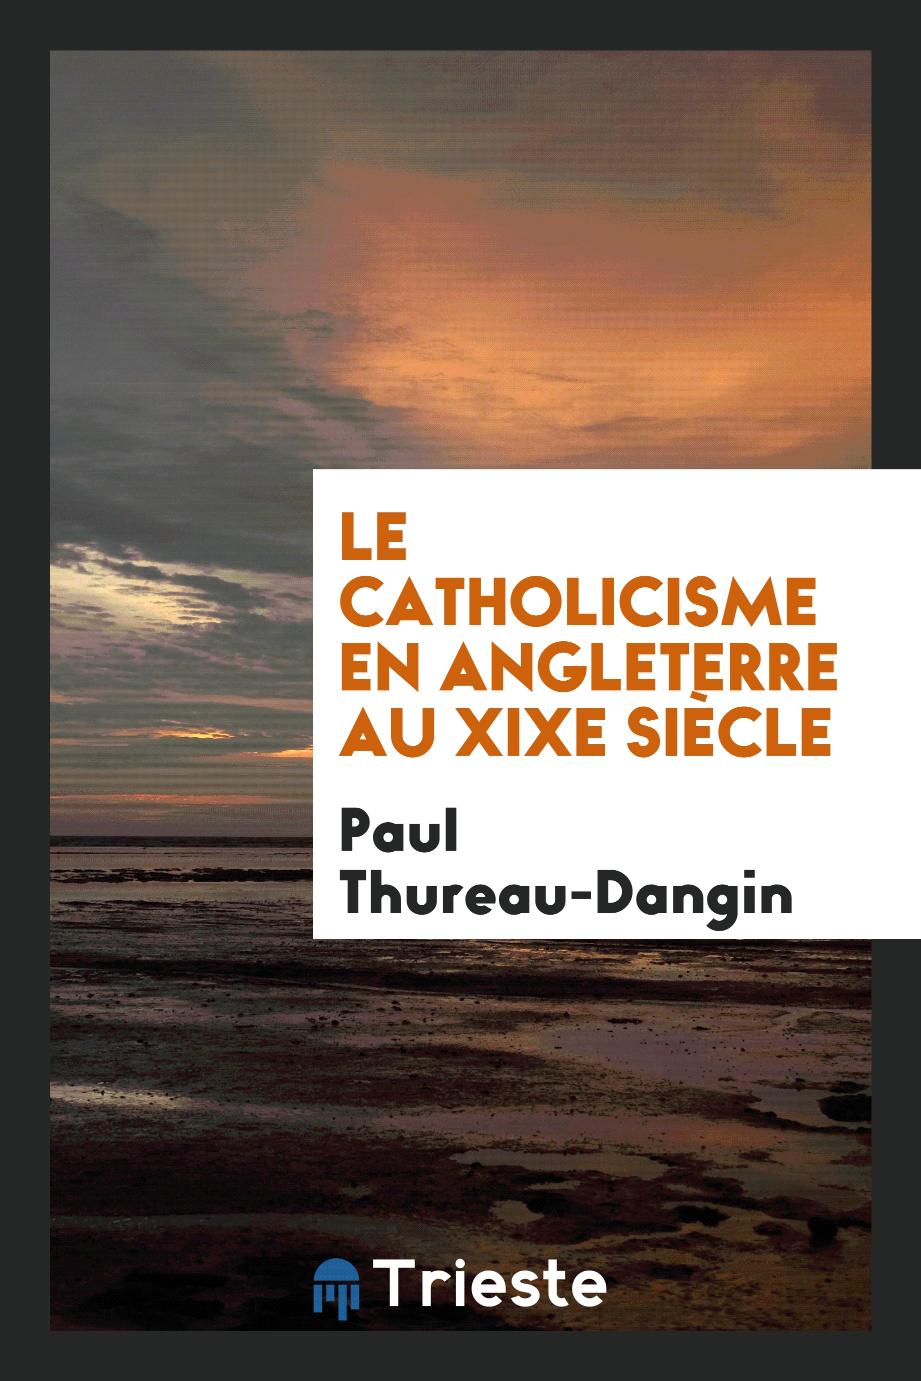 Paul Thureau-Dangin - Le catholicisme en Angleterre au XIXe siècle